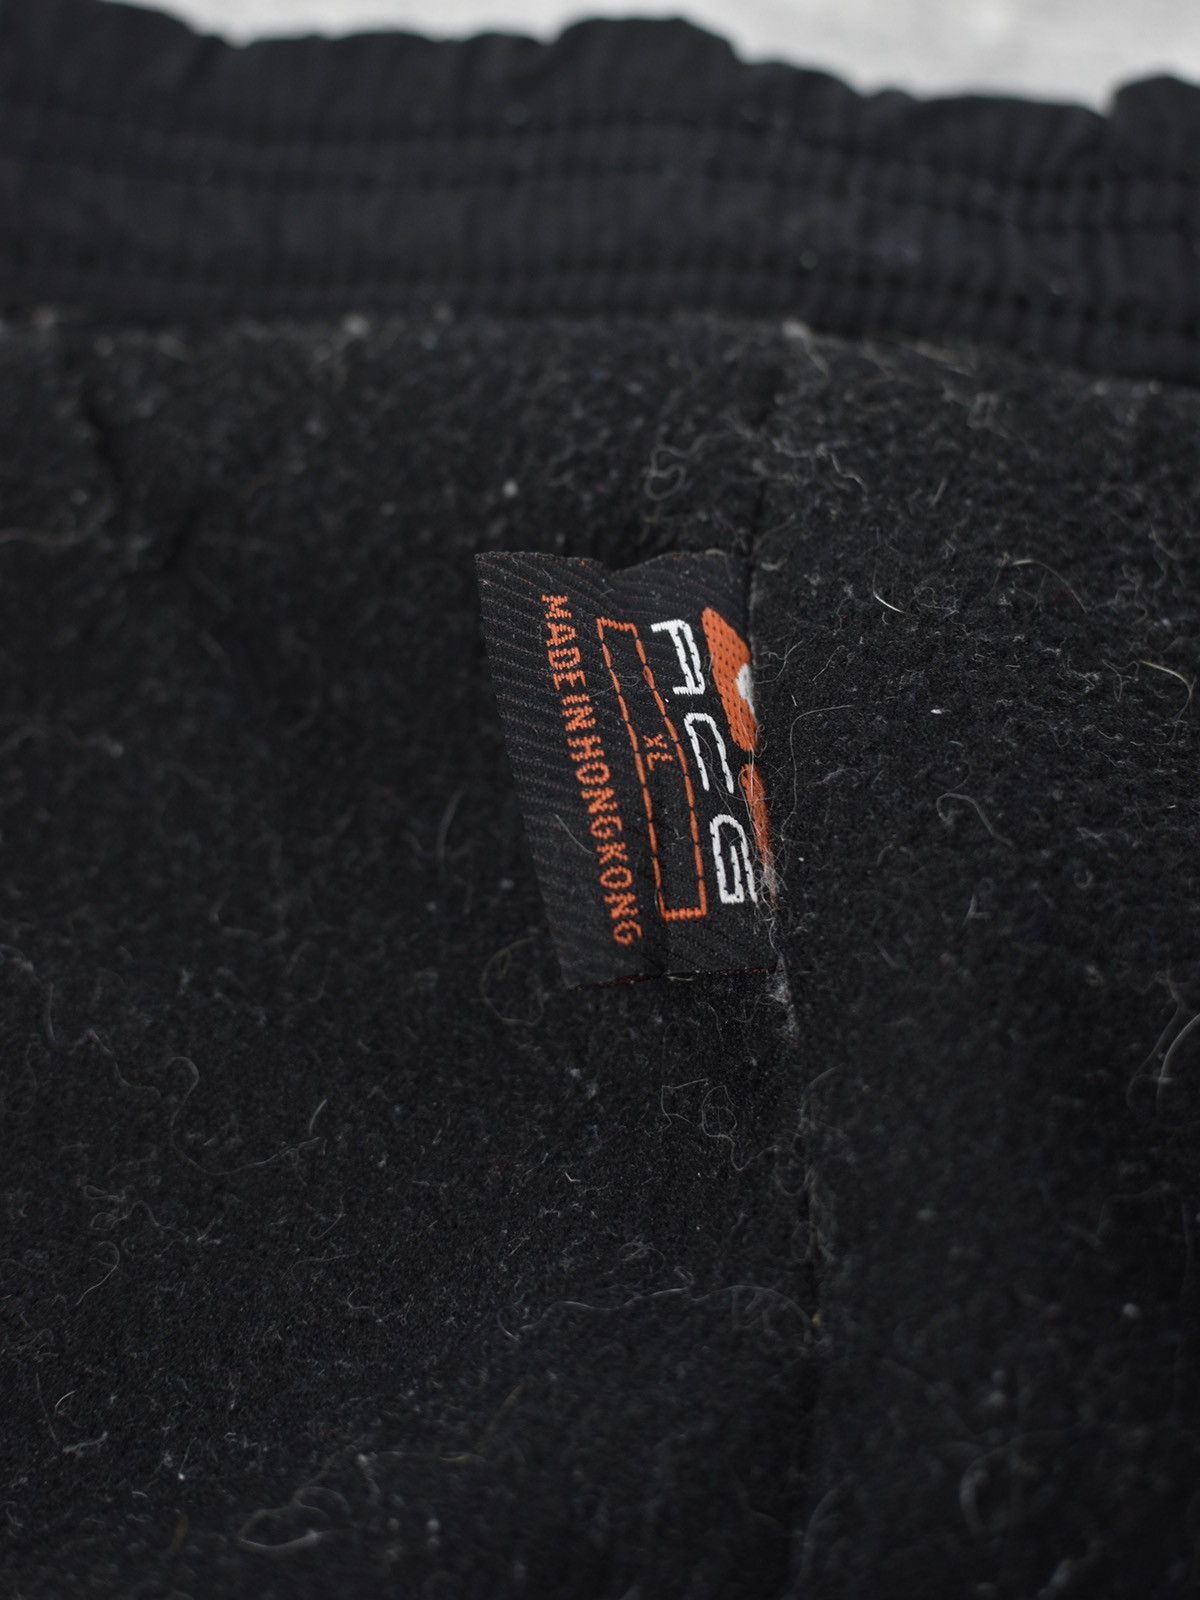 Nike Vintage Nike ACG Fleece Pants Size XL Size US 36 / EU 52 - 8 Preview